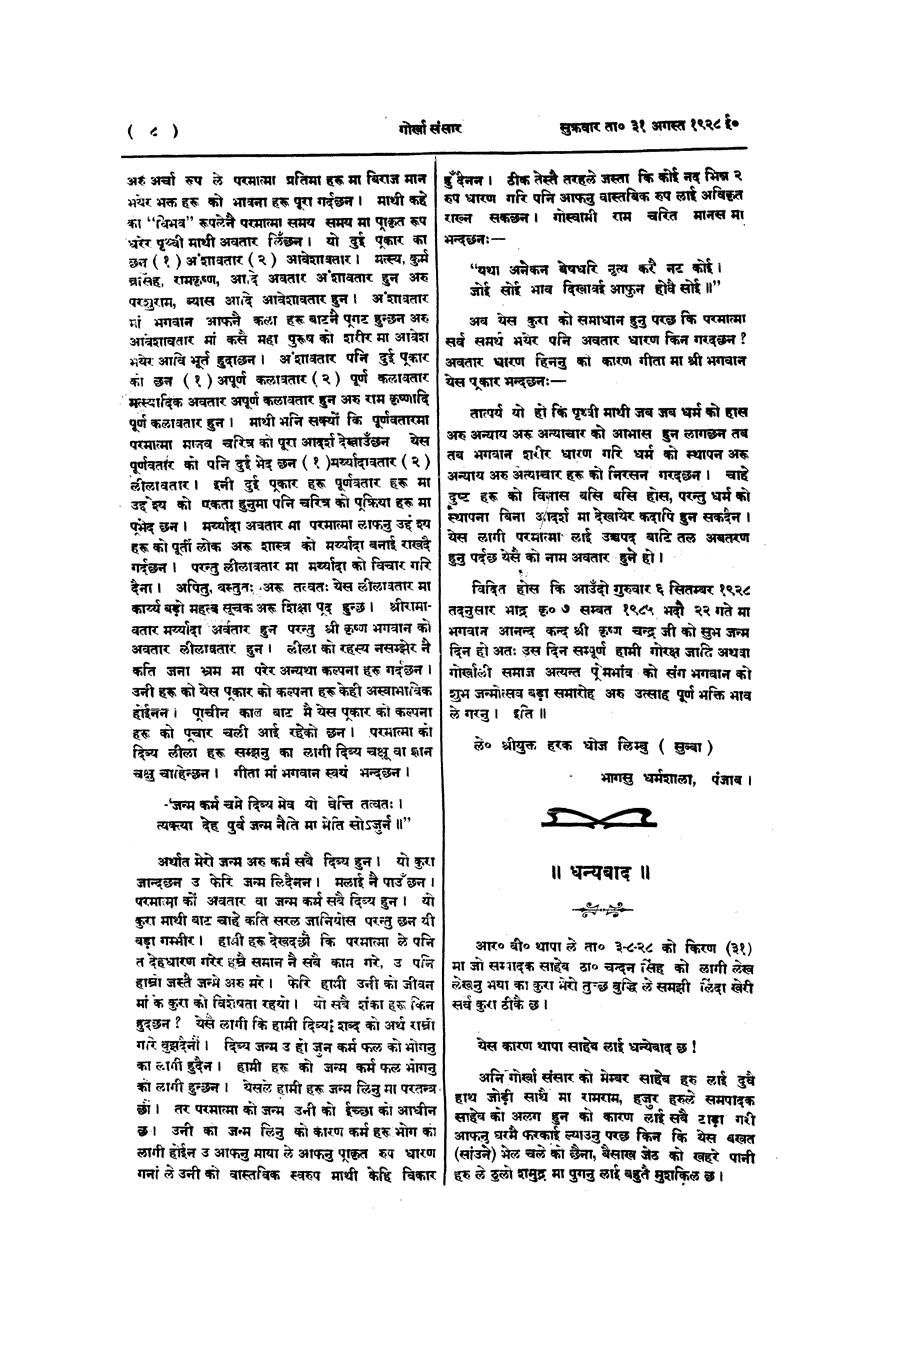 Gorkha Sansar, 31 Aug 1928, page 8